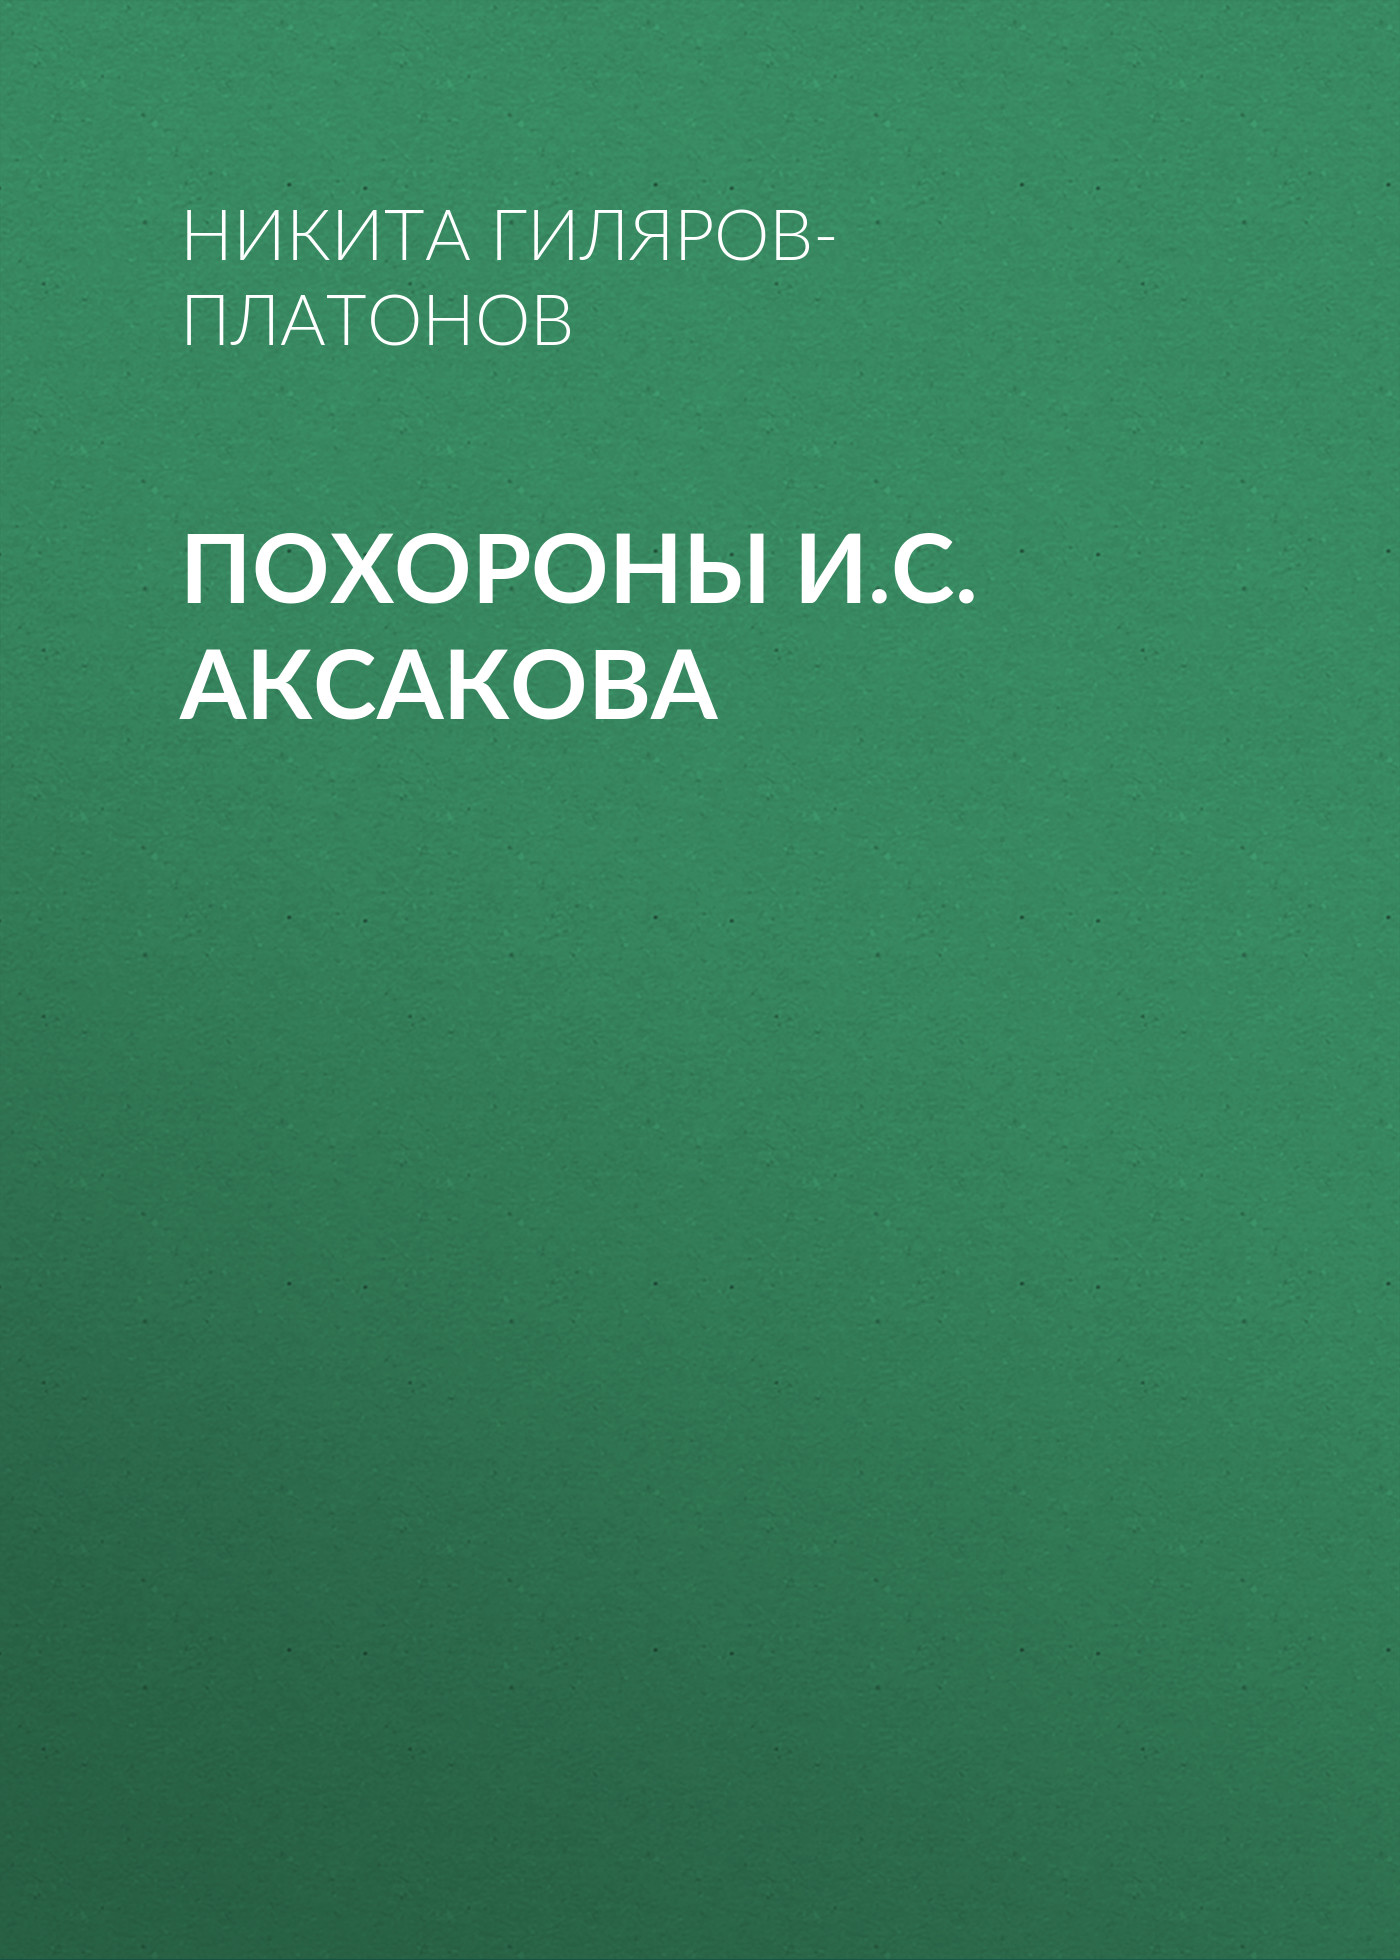 Книга Похороны И.С. Аксакова из серии , созданная Никита Гиляров-Платонов, может относится к жанру Критика. Стоимость электронной книги Похороны И.С. Аксакова с идентификатором 25726192 составляет 5.99 руб.